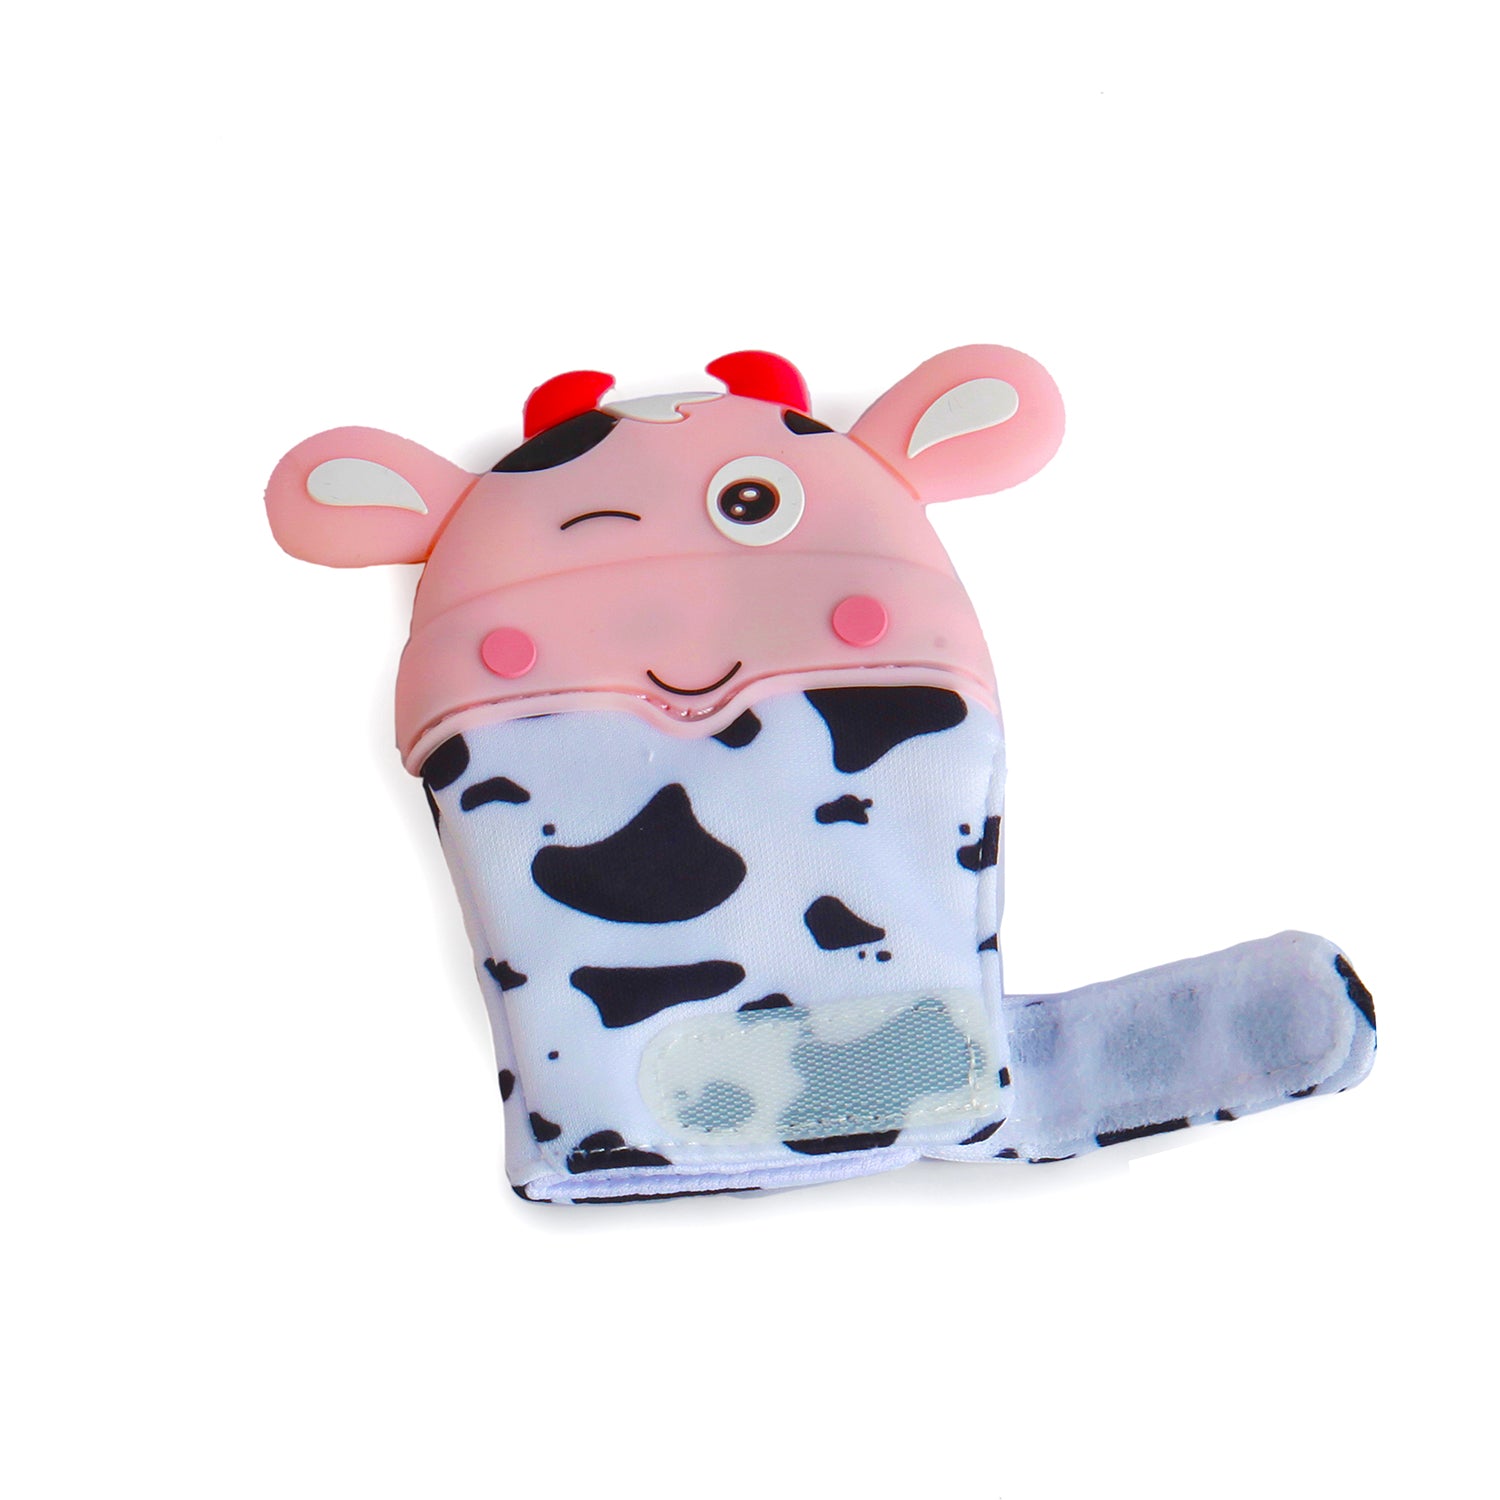 Winking Cow Pink Teething Mitten - 1 pc